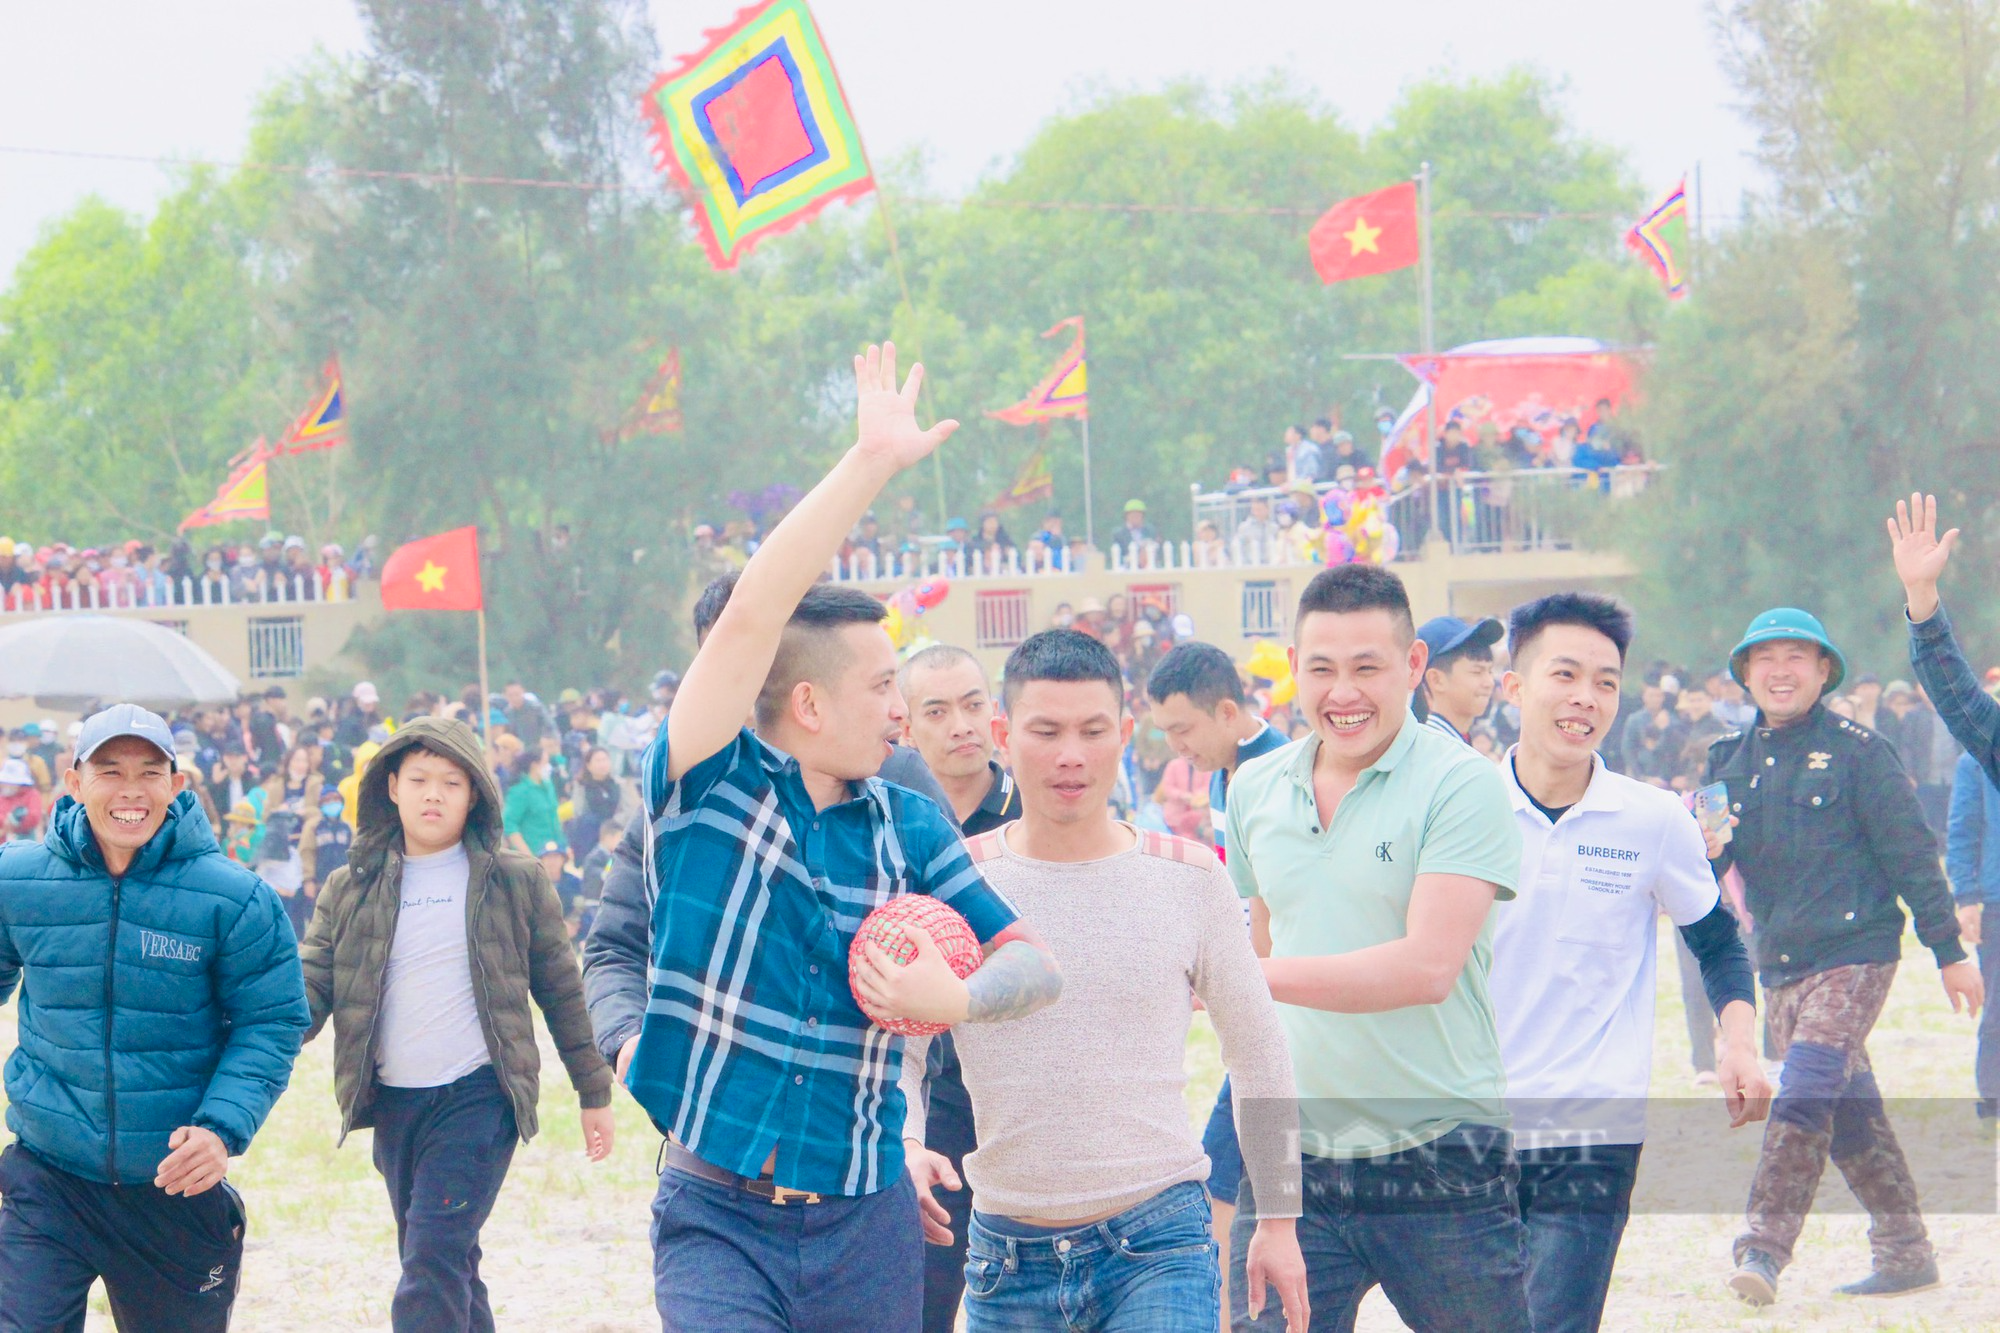 Hàng chục trai tráng lao vào tranh nhau quả cầu trong Lễ hội Khai Hạ ở Quảng Bình - Ảnh 2.